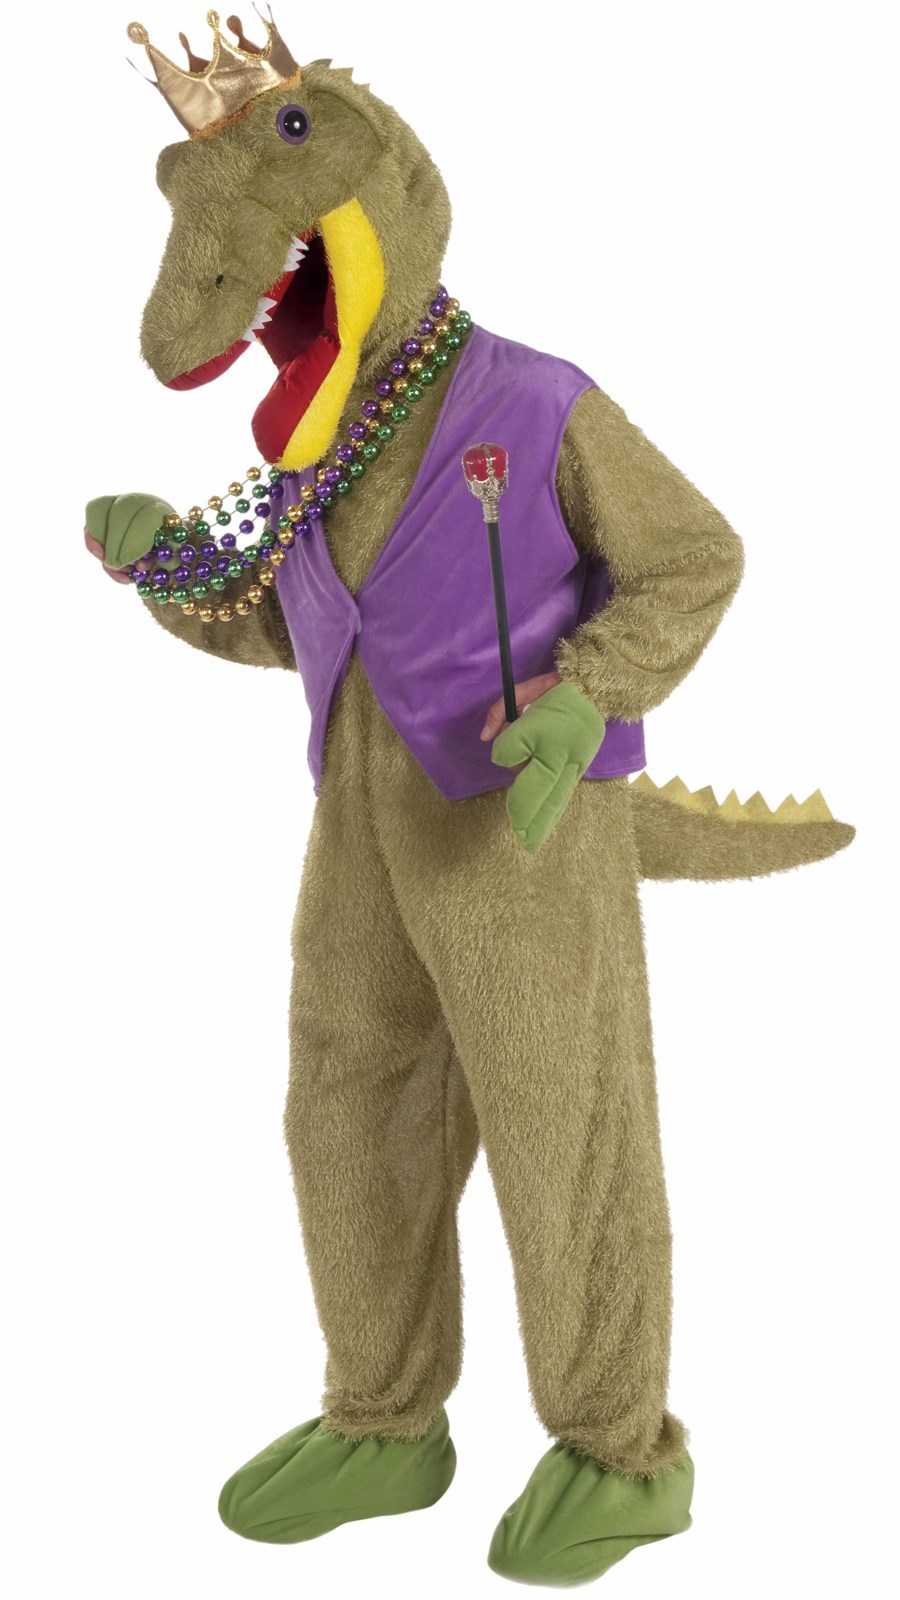 Mardi Gras Alligator King Adult Costume